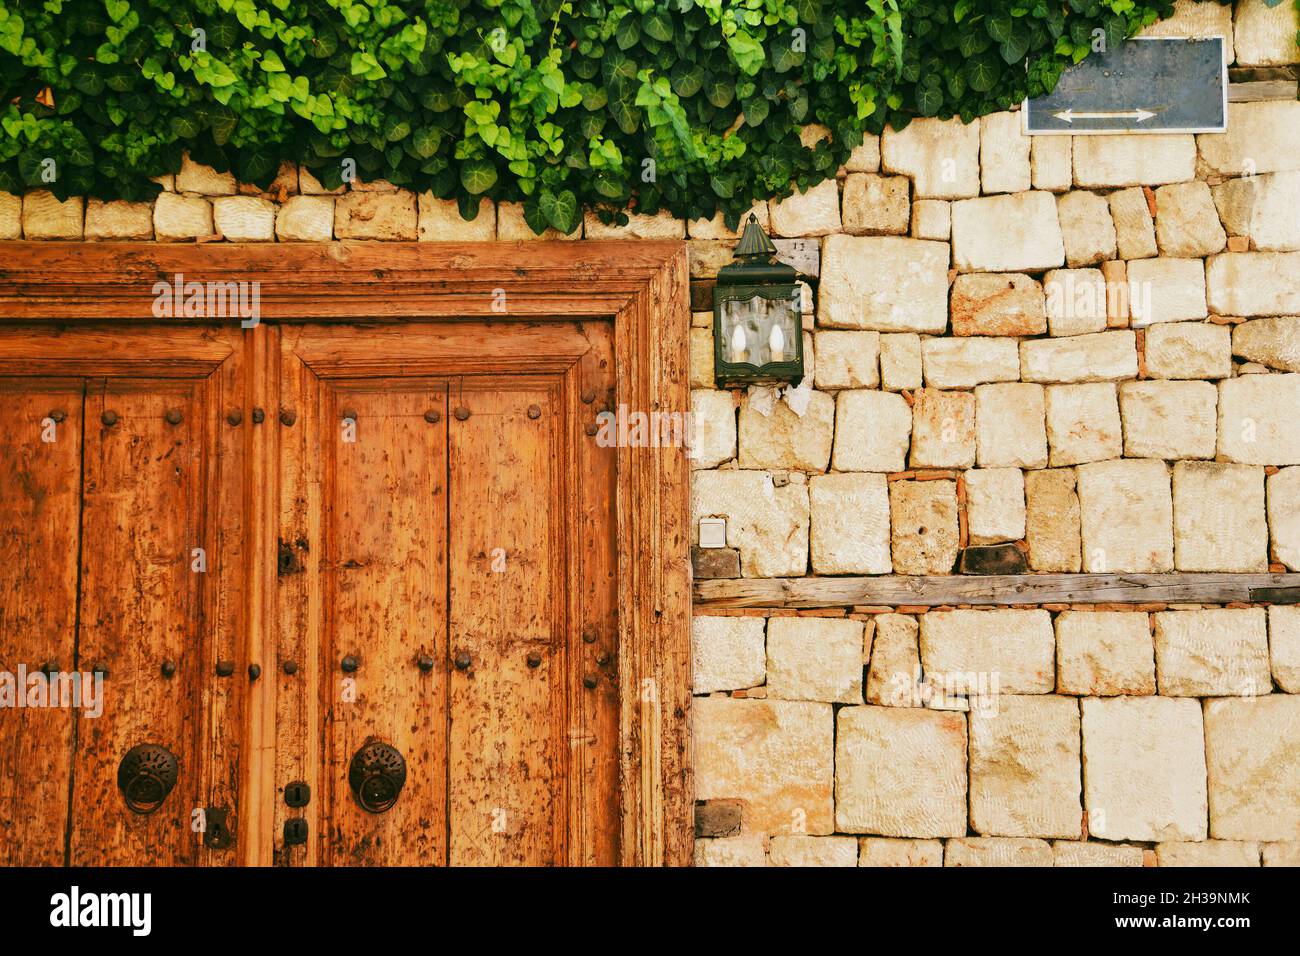 vue de face sur l'ancienne porte en bois, mur de briques et lierre verte recouvrant le mur Banque D'Images